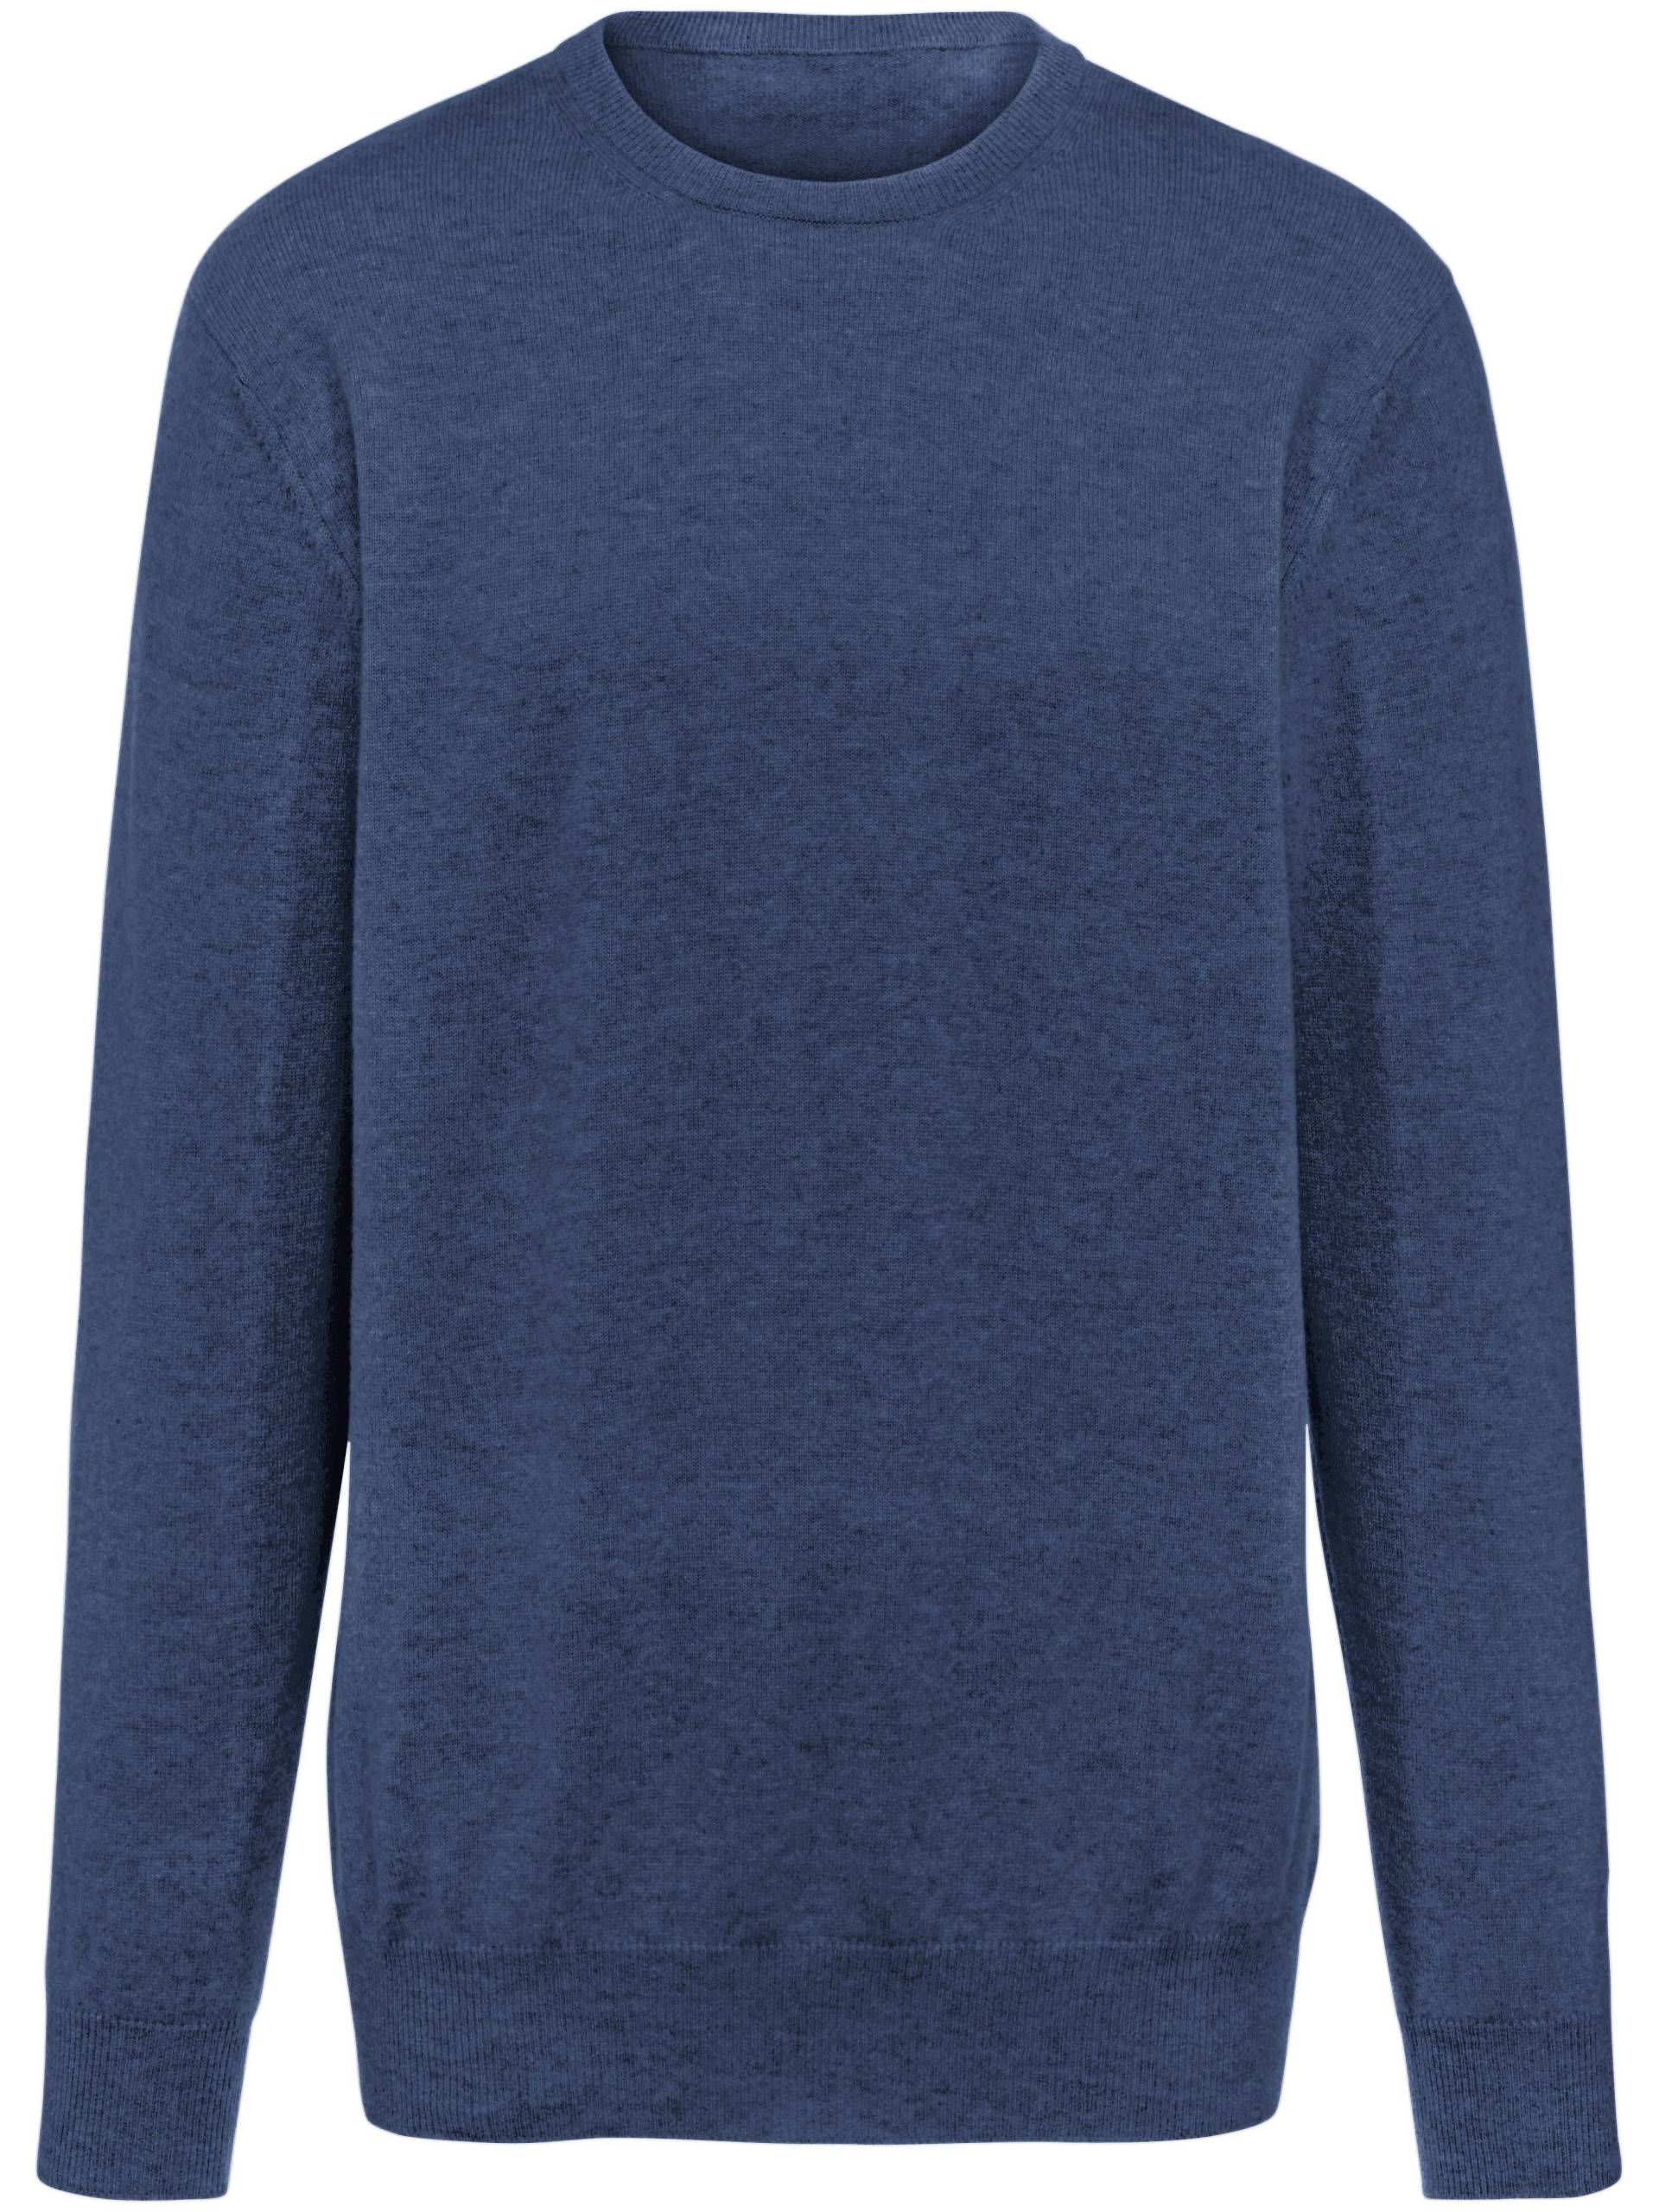 Pullover aus 100% Premium-Kaschmir Modell Ralph Peter Hahn Cashmere blau Größe: 52 von Peter Hahn Cashmere